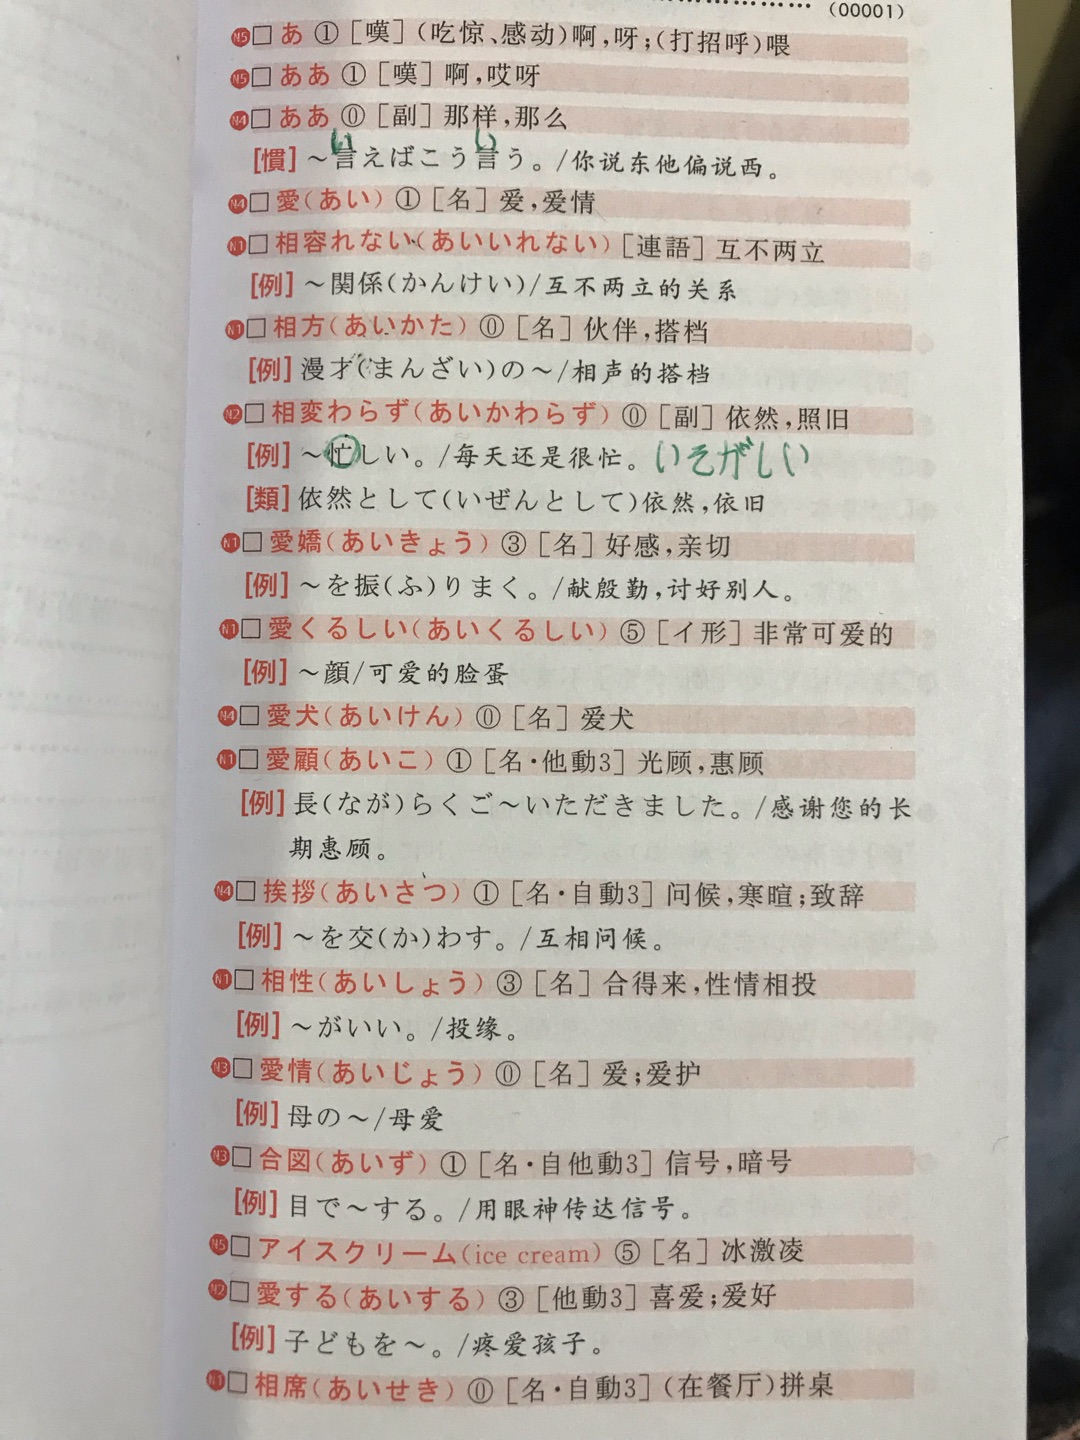 下面的例句有的汉字没有标平假名 呃呃呃呃呃呃呃呃呃呃呃呃呃呃呃呃呃呃呃呃呃呃呃呃呃